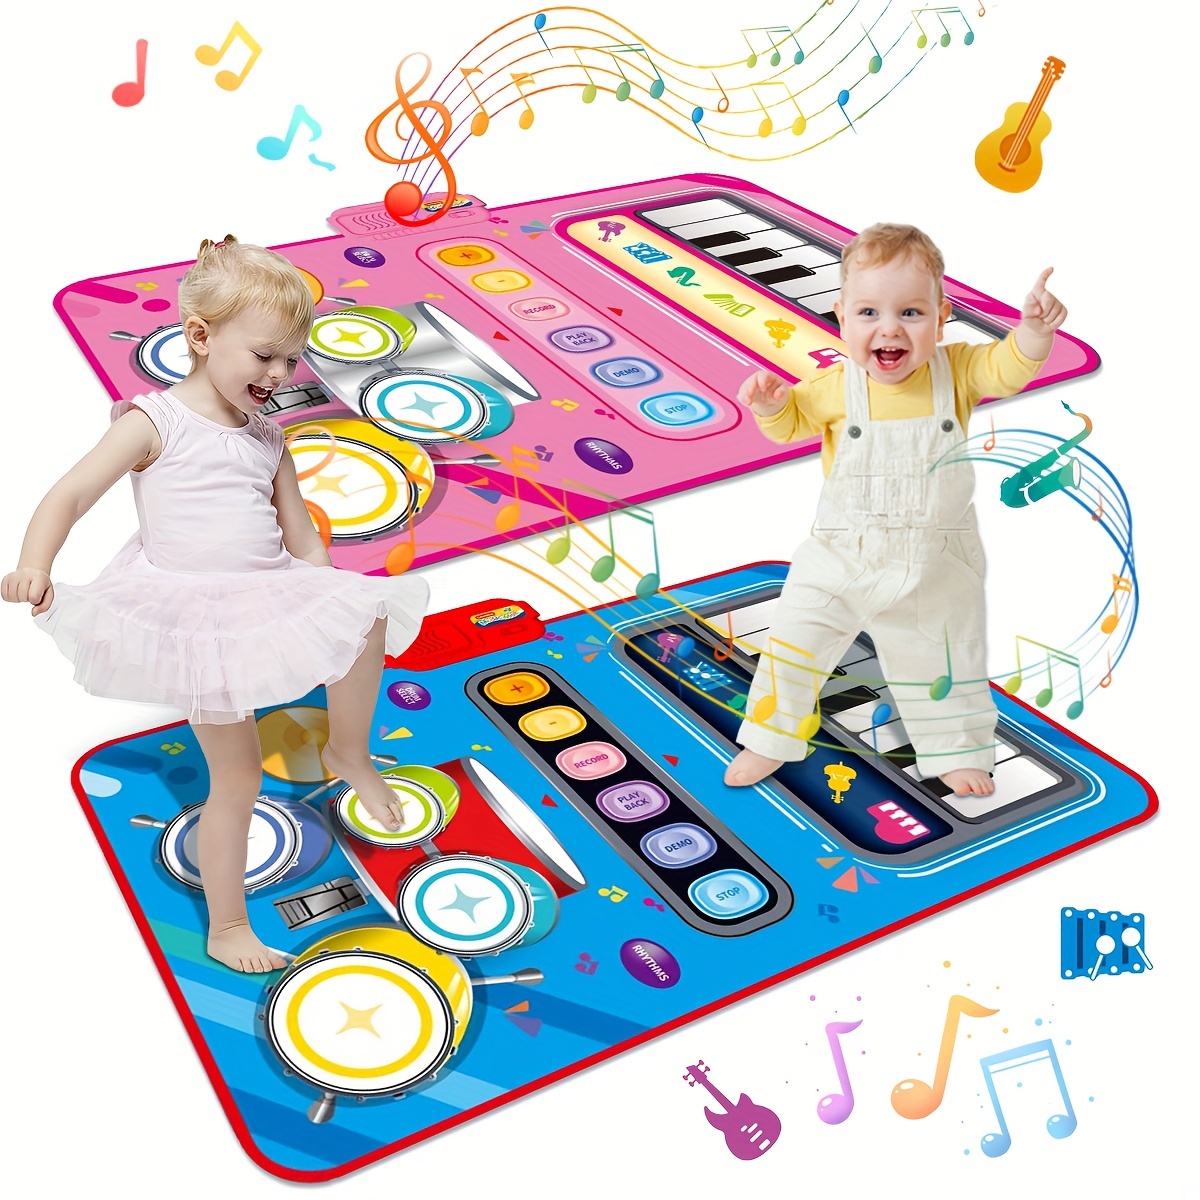 Kaufe Musikalische Klaviermatte für Babys, Bodentanzspielzeug mit